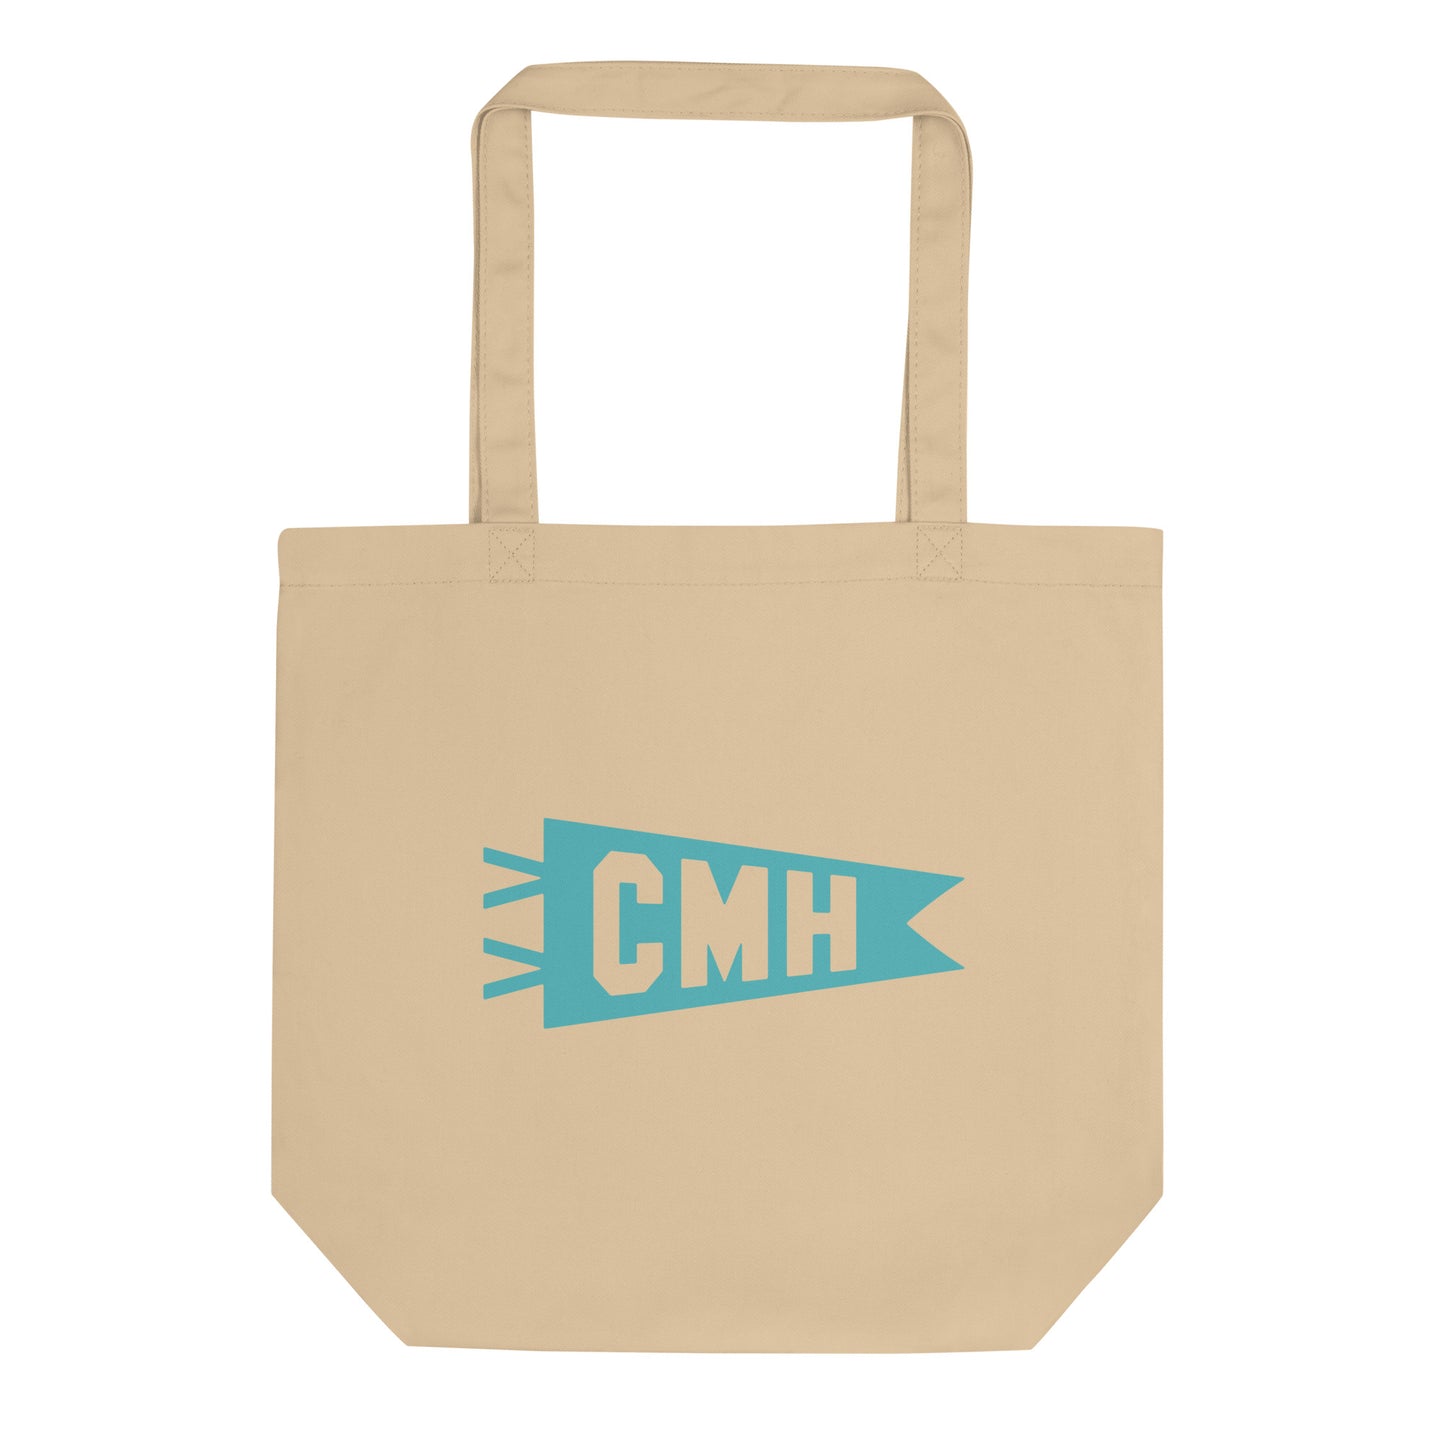 Cool Travel Gift Organic Tote Bag - Viking Blue • CMH Columbus • YHM Designs - Image 01